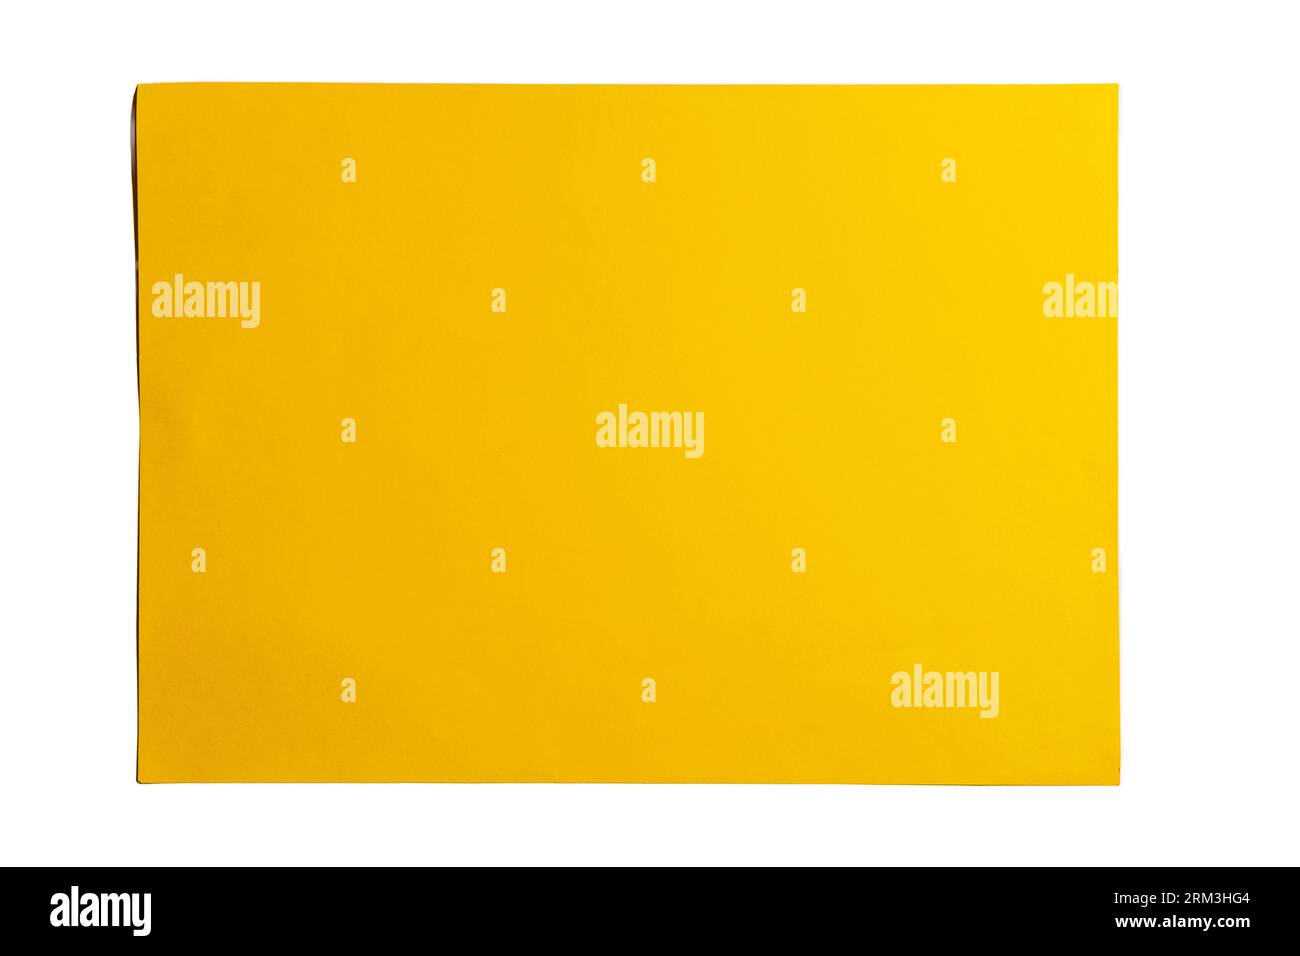 Hintergrund der Papierstruktur. Gelbes Papier für Kreativität. Ansicht von oben, alte Papierstruktur zum Hinzufügen von Text oder Arbeitsdesign für Hintergrundprodukte. Draufsicht Stockfoto